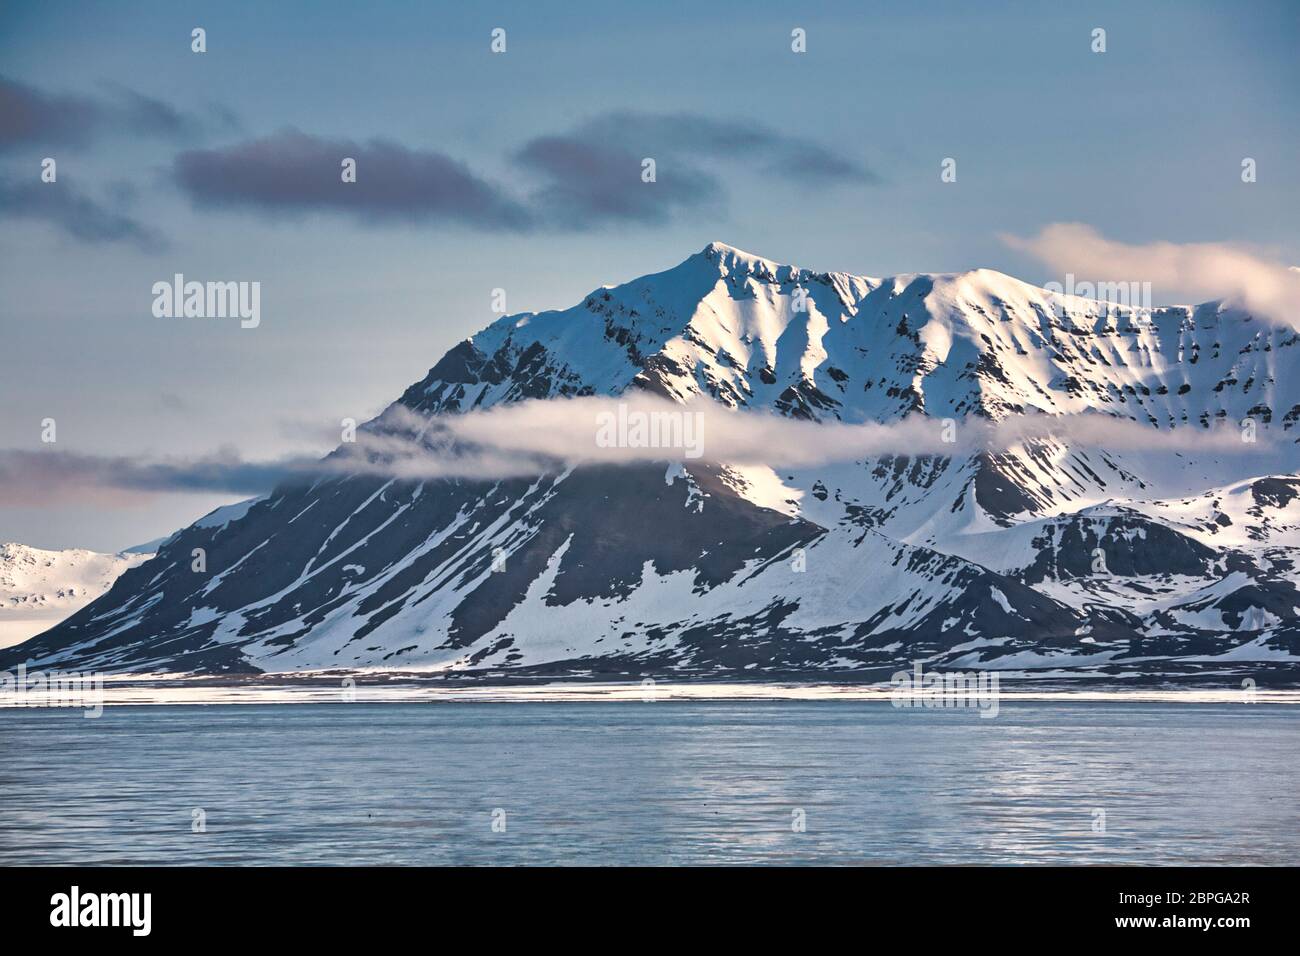 Bergszene mit schneebedeckten Gipfeln, die in Wolken bei Spitzbergen, Svalbard, Nordnorwegen, umraht sind Stockfoto